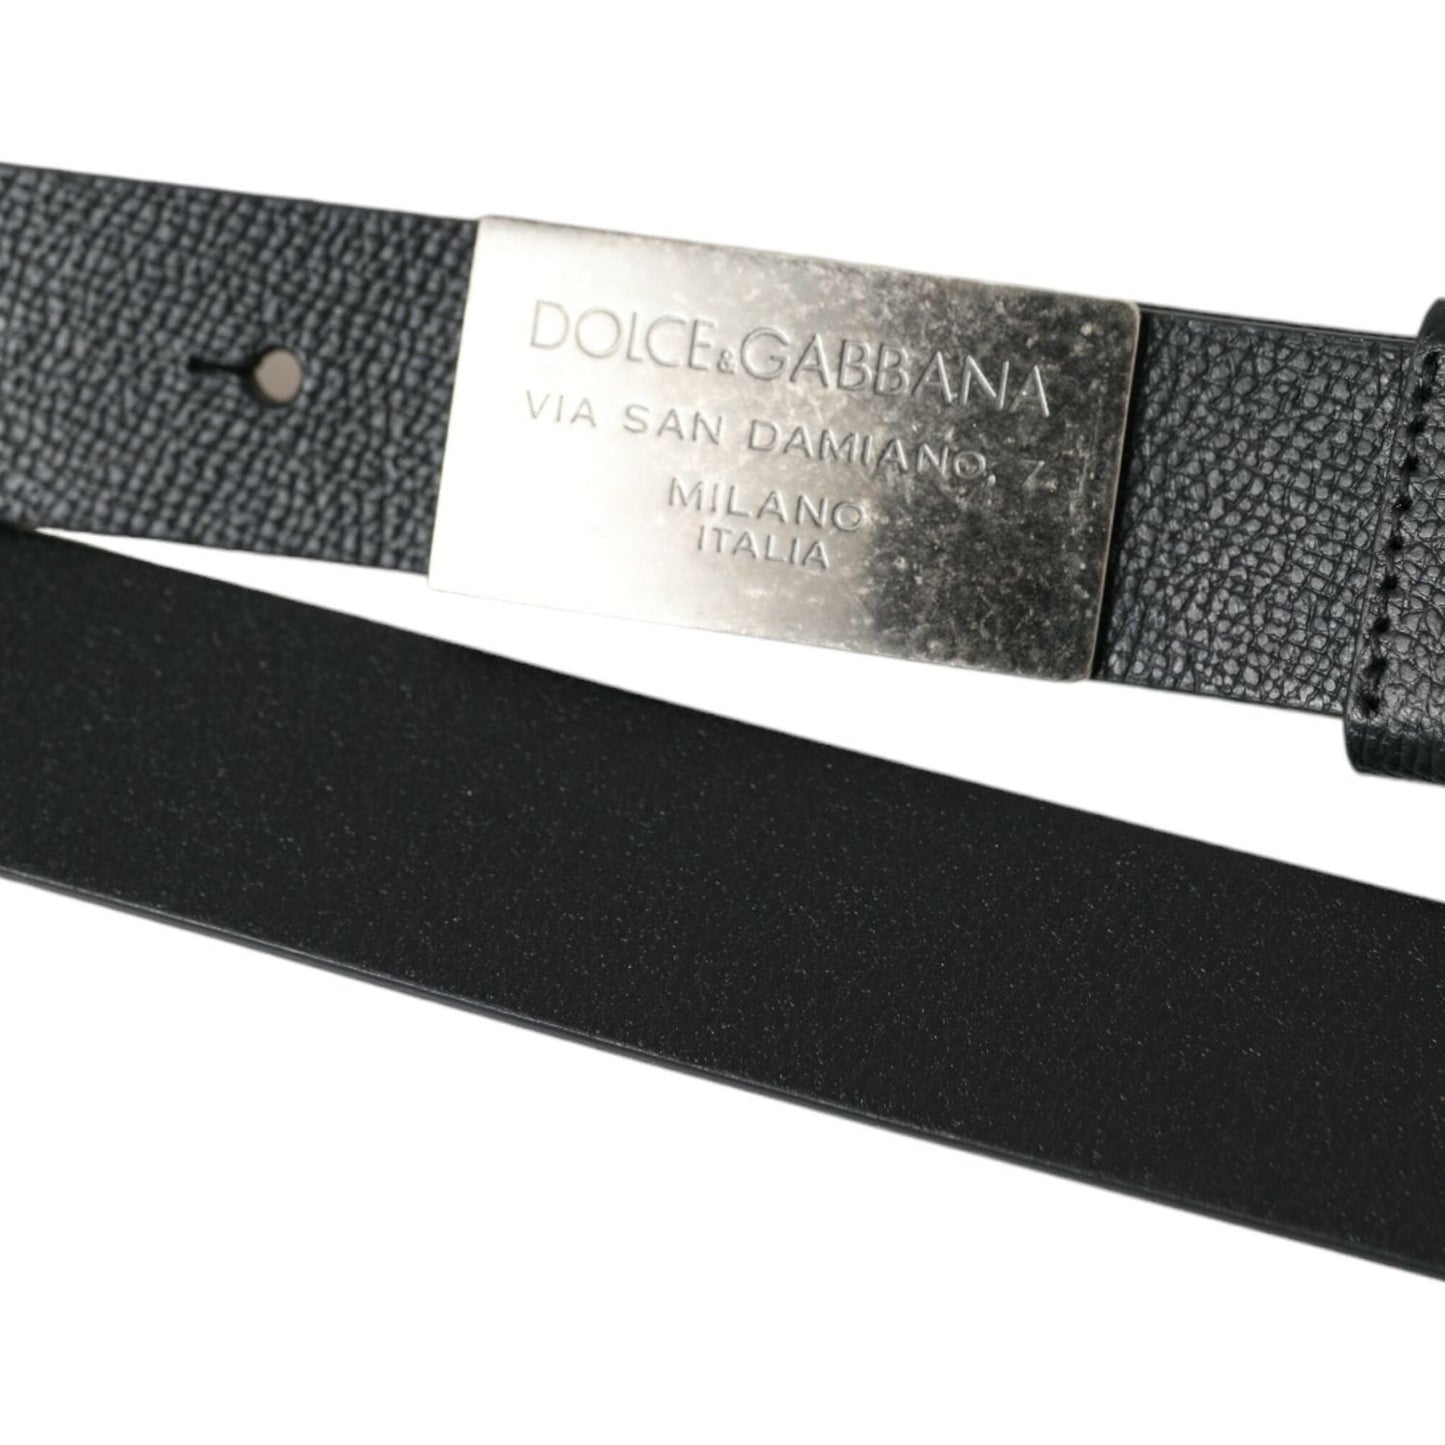 Dolce & Gabbana | Elegant Black Calf Leather Belt with Metal Buckle| McRichard Designer Brands   